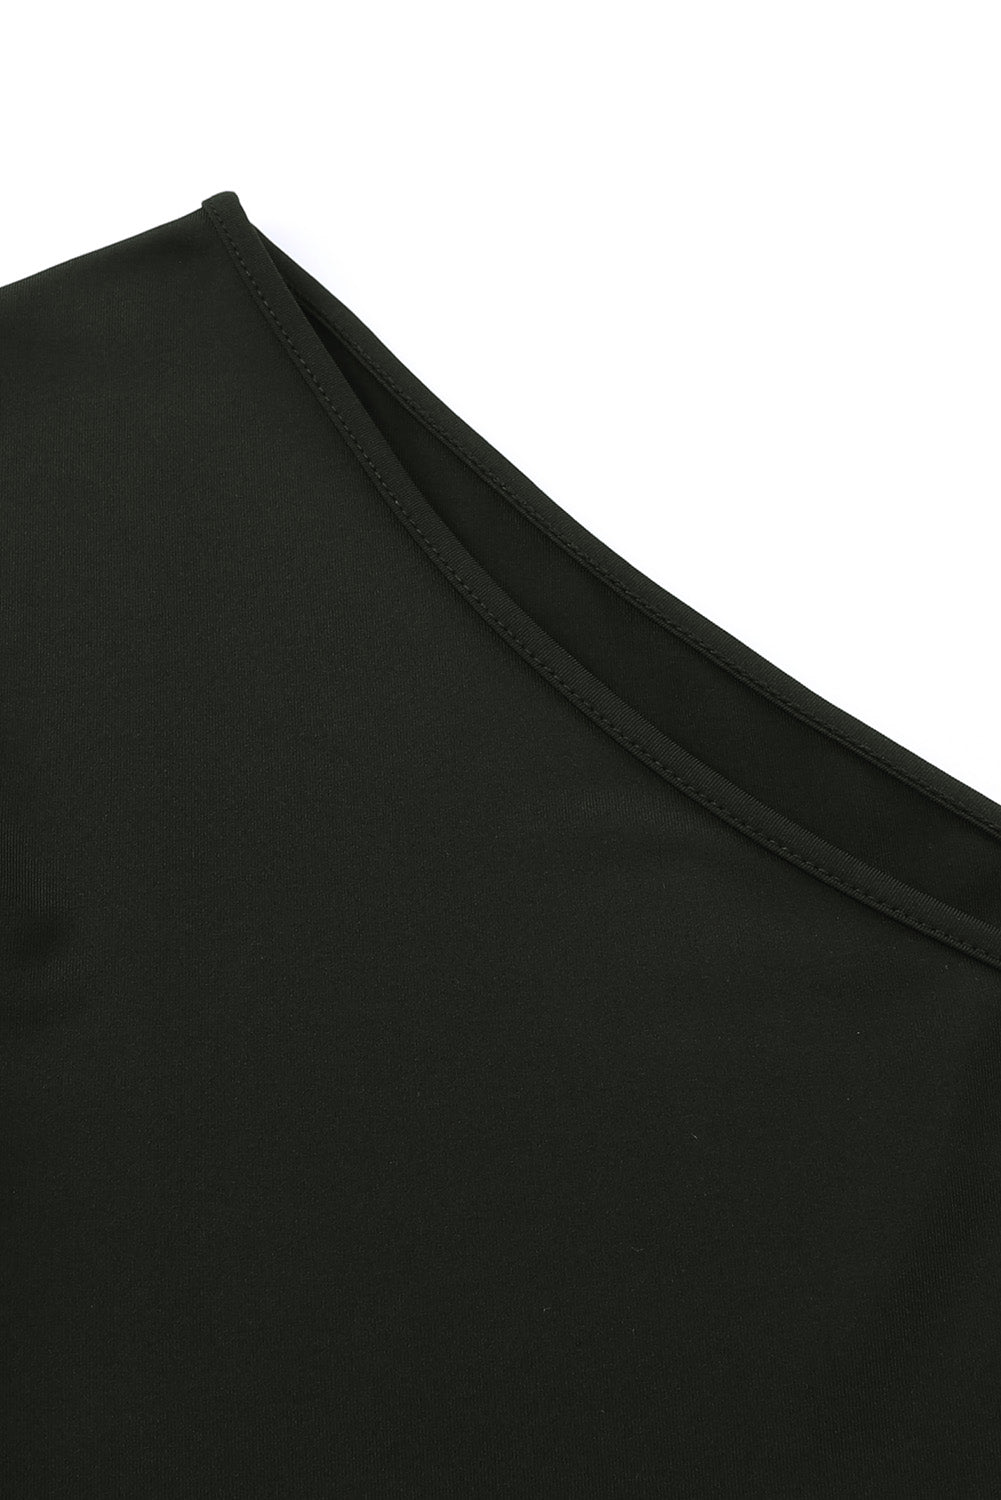 Black One Shoulder Fringed Long Sleeve Bodysuit Bodysuits JT's Designer Fashion